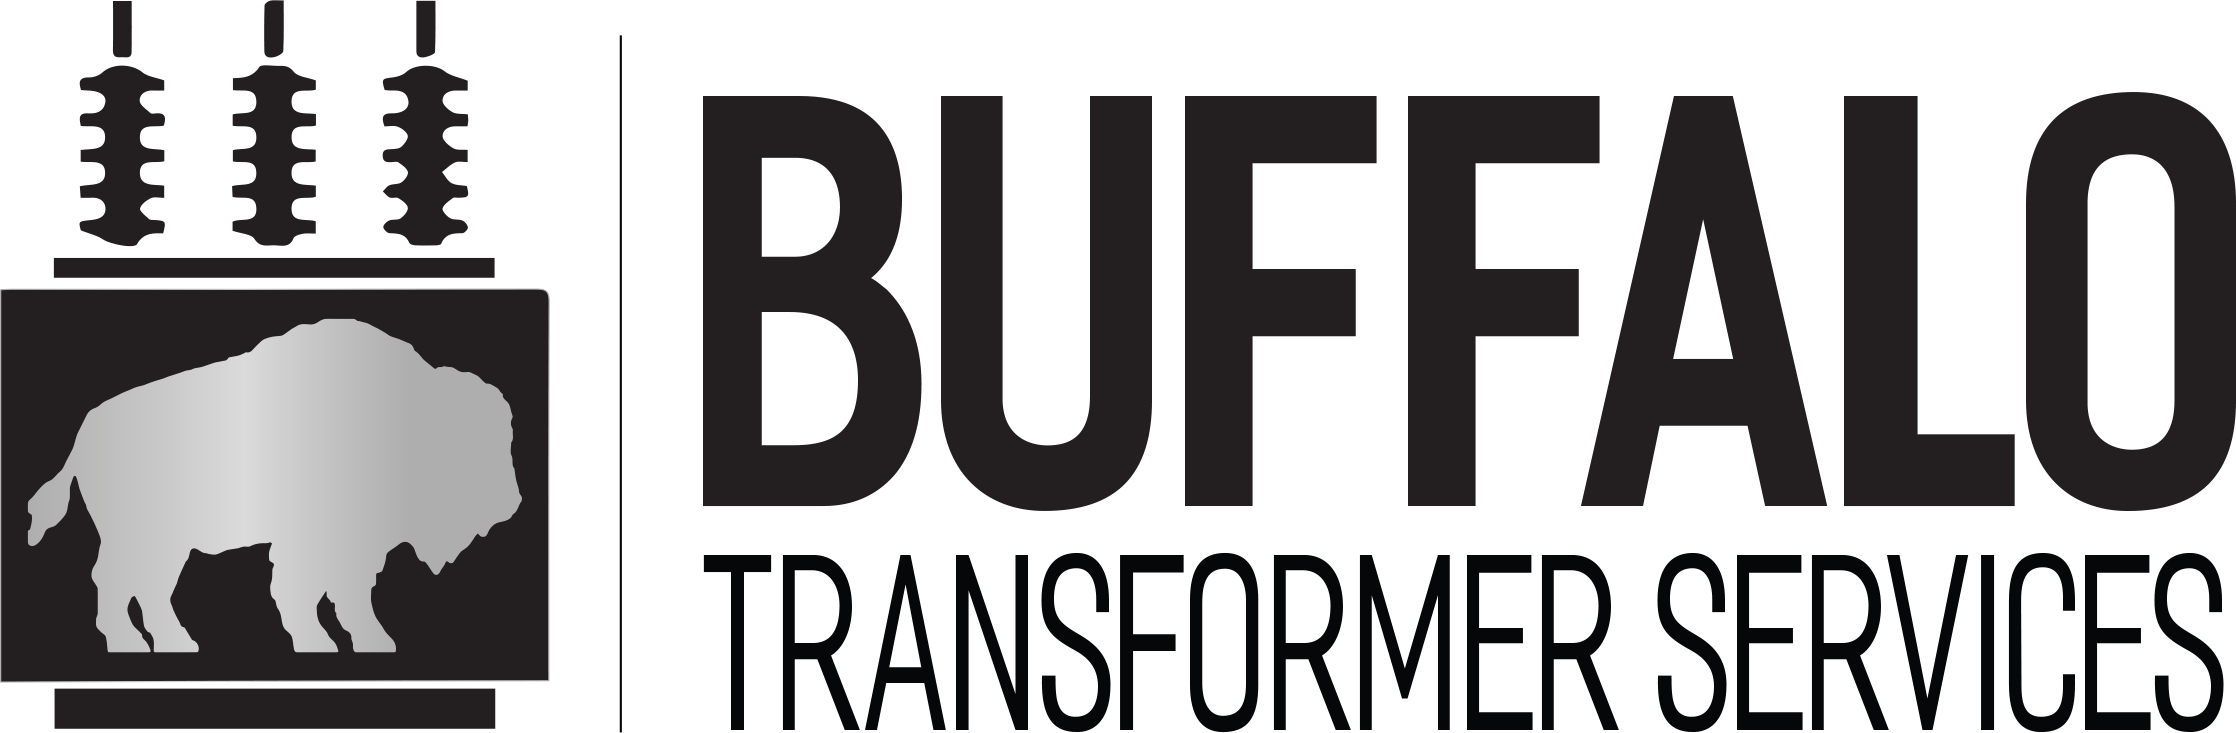 Buffalo Transformer Services